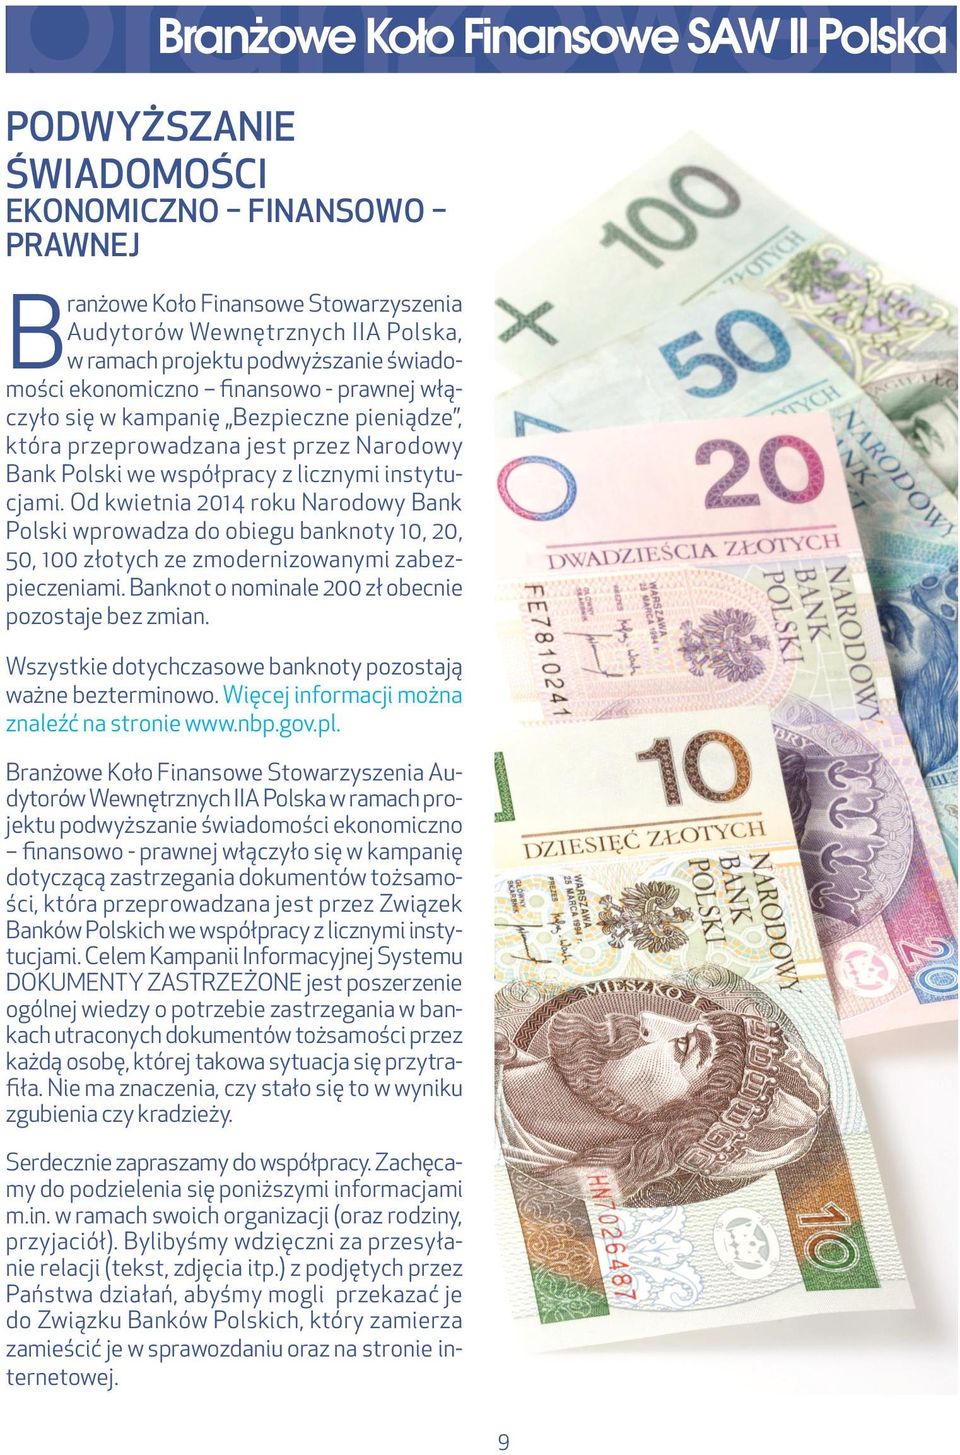 Od kwietnia 2014 roku Narodowy Bank Polski wprowadza do obiegu banknoty 10, 20, 50, 100 złotych ze zmodernizowanymi zabezpieczeniami. Banknot o nominale 200 zł obecnie pozostaje bez zmian.